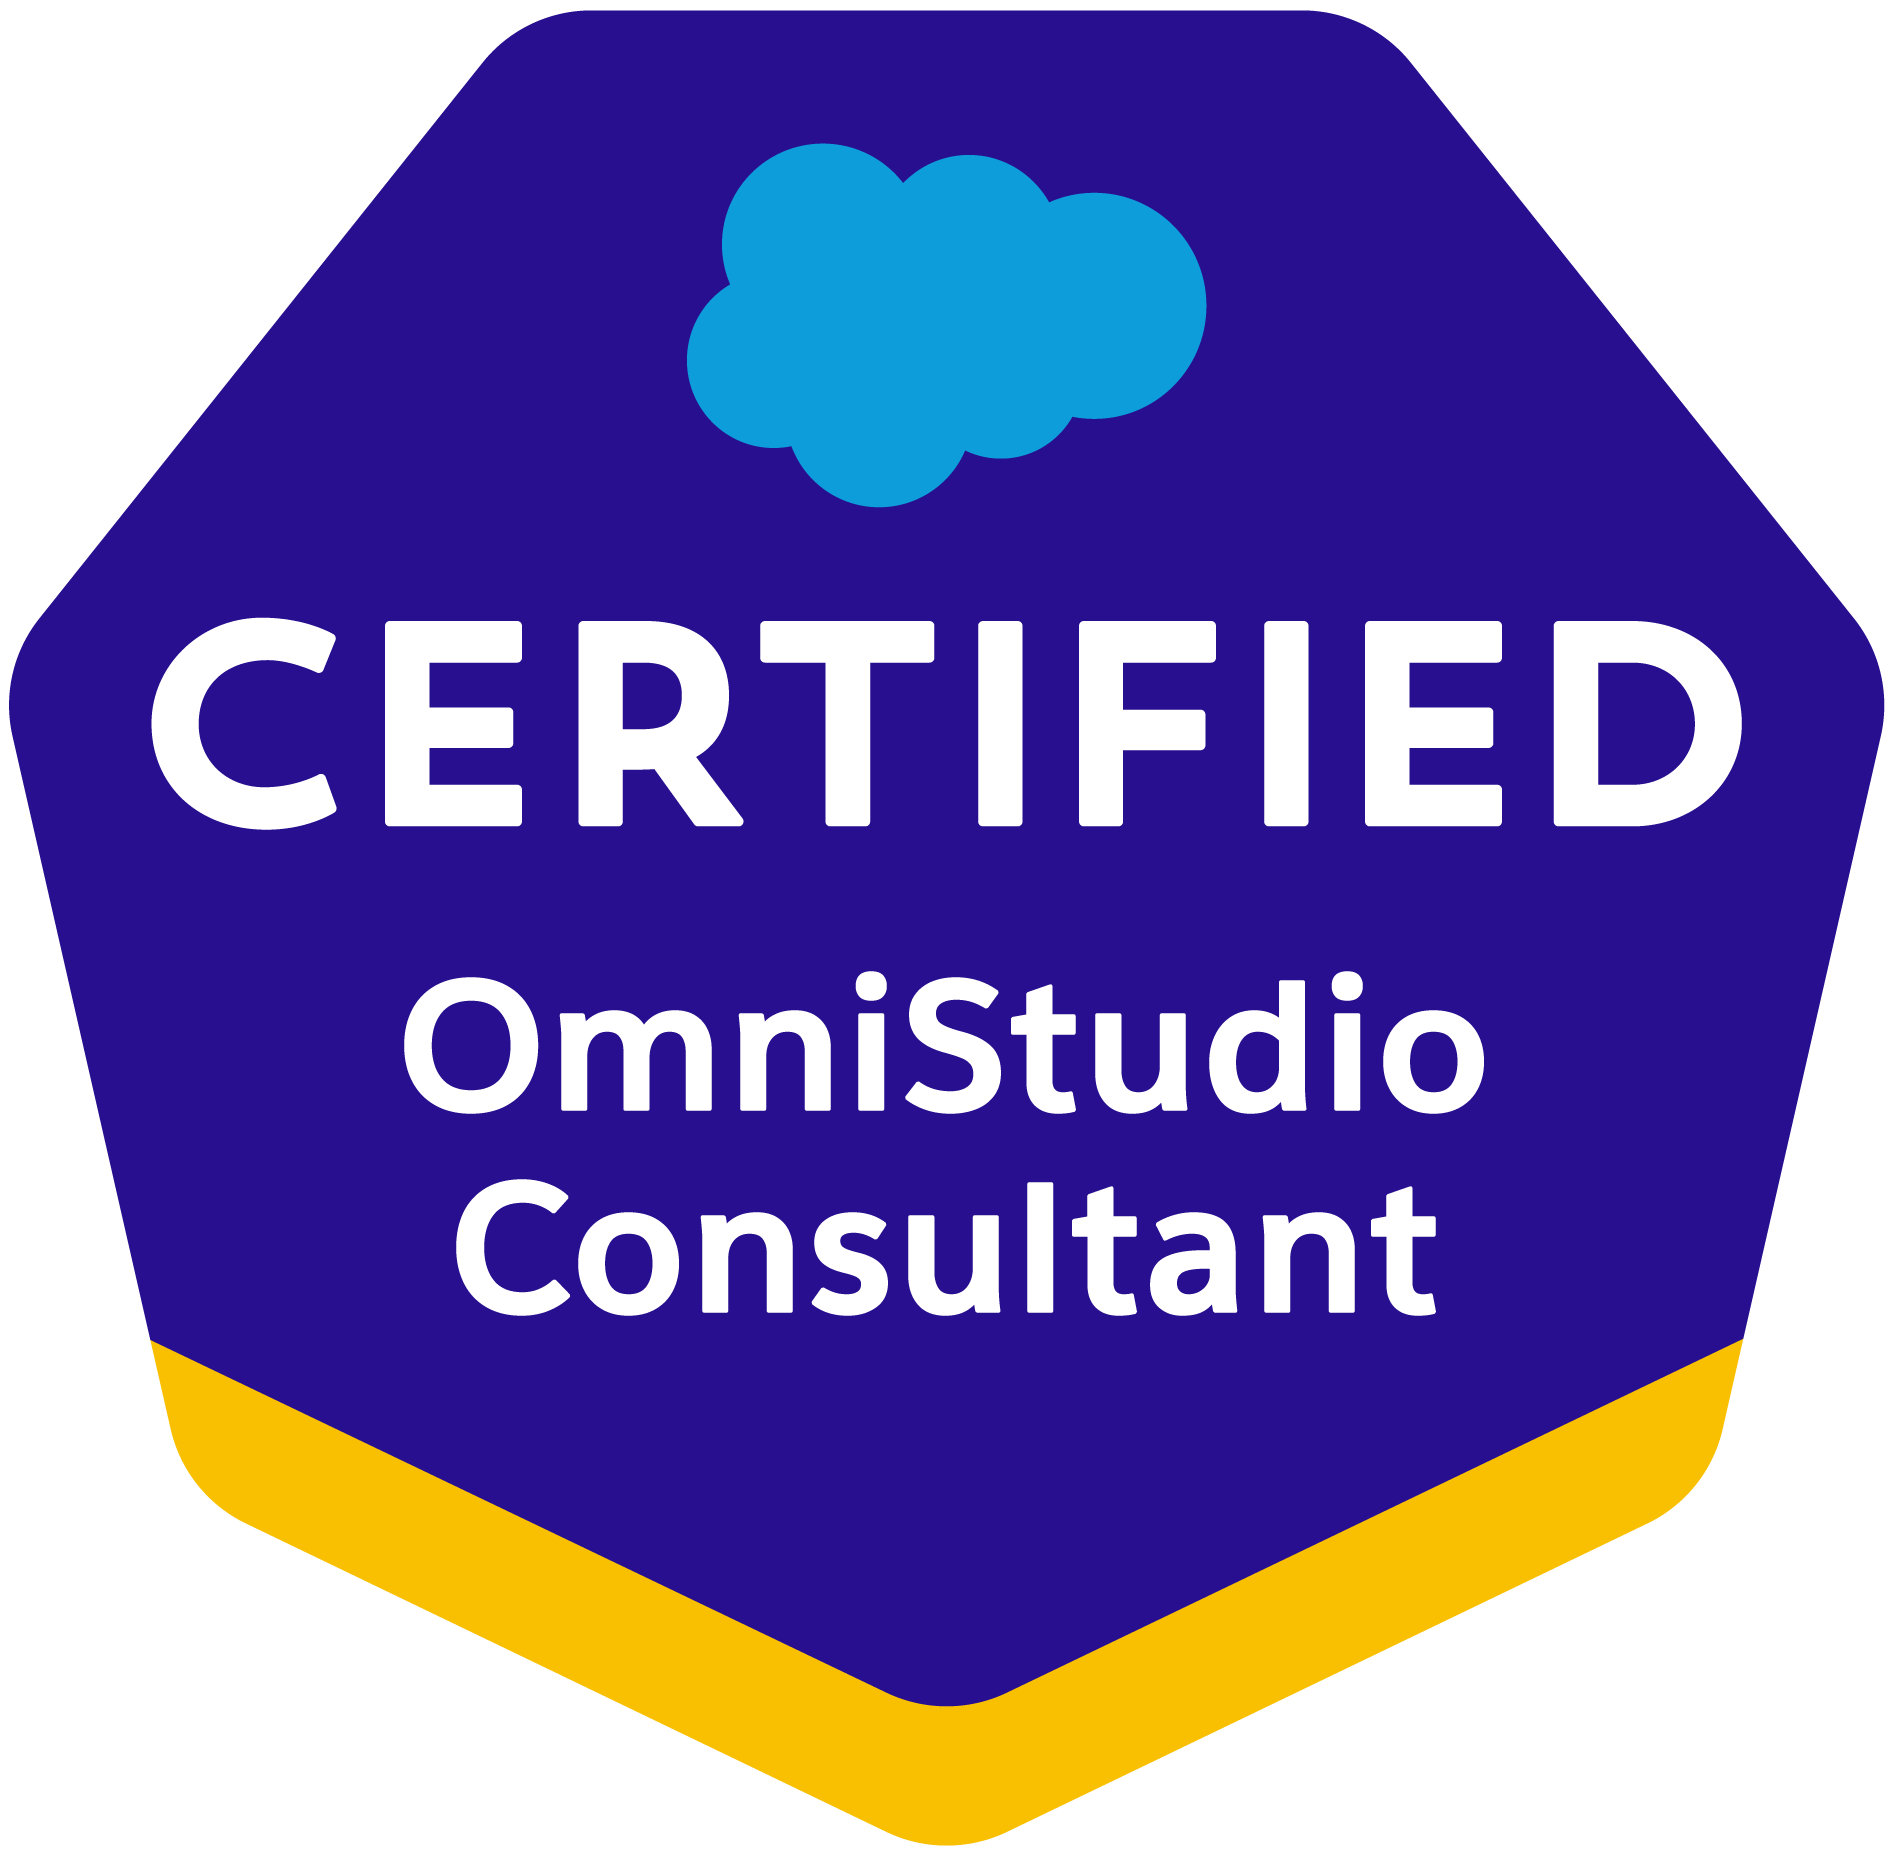 OmniStudio Consultant Certification